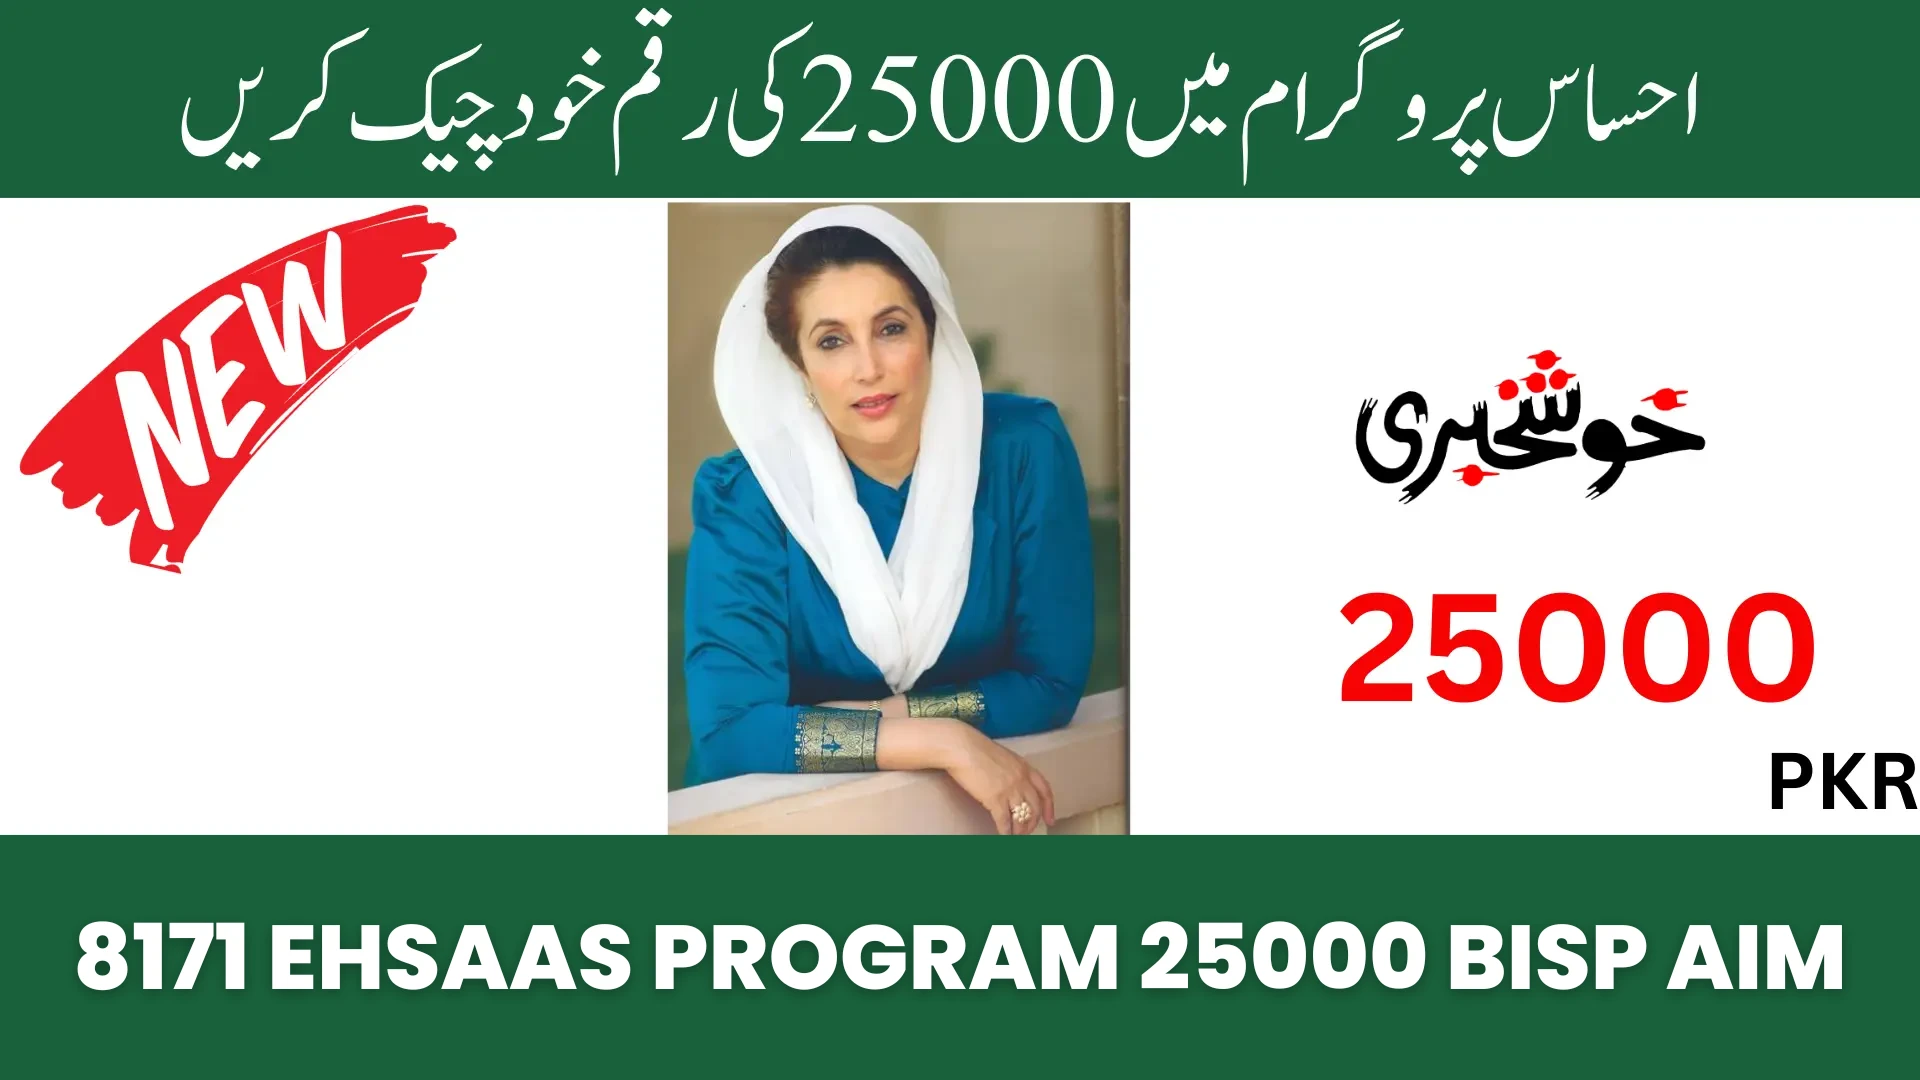 8171 Ehsaas Program 25000 BISP Aim